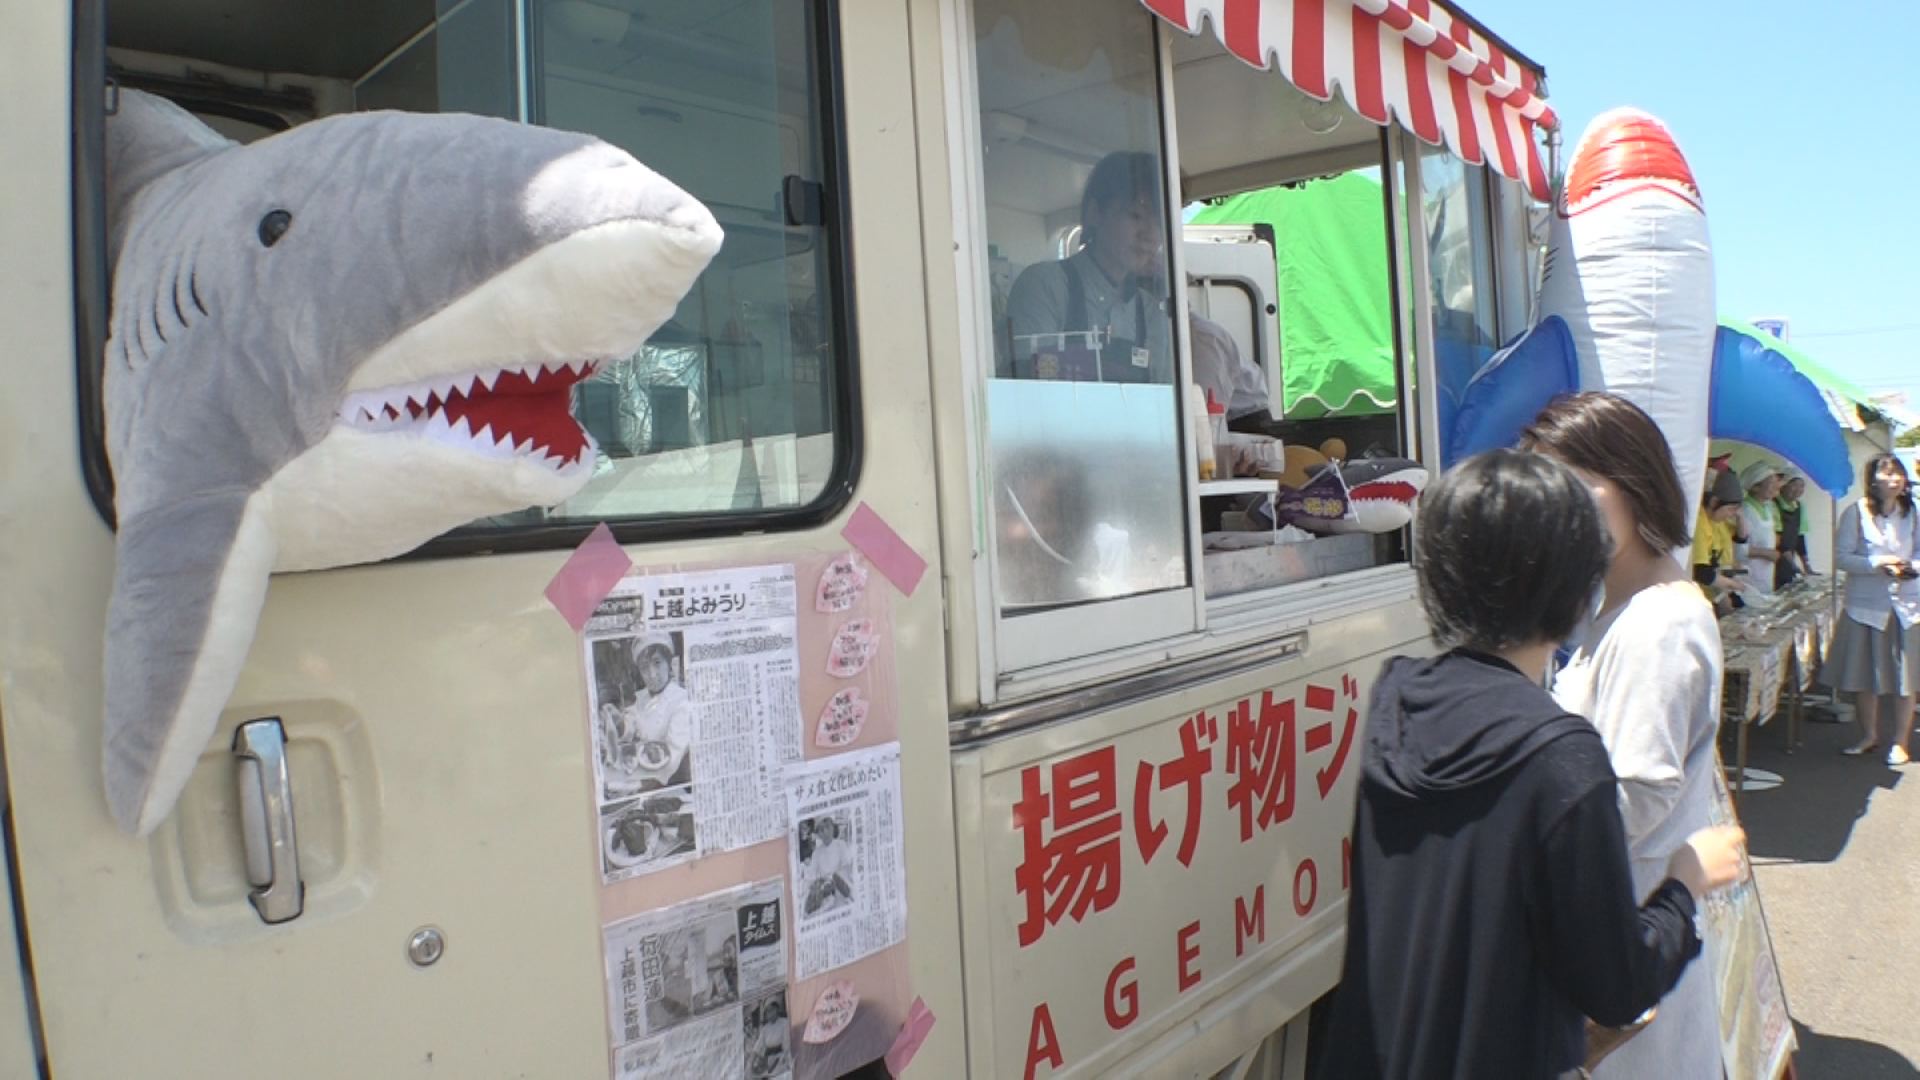 おいしく次世代に 江戸から続く上越のサメ食文化 ニュース 上越妙高タウン情報